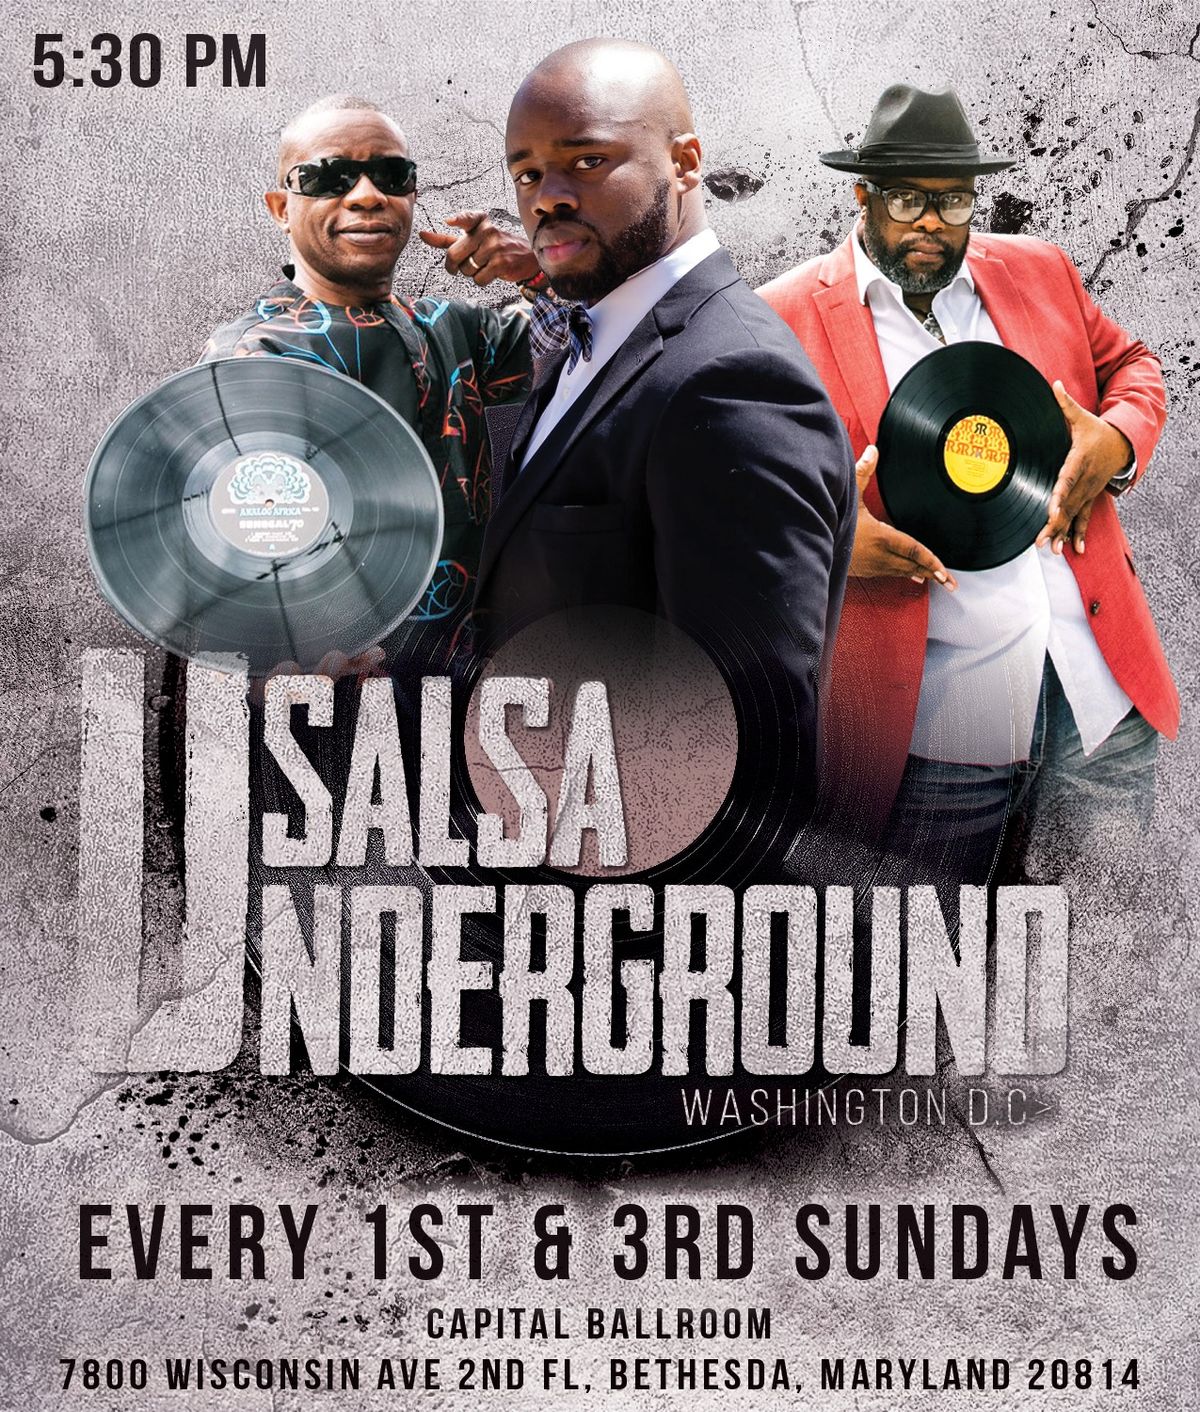 Salsa Underground DC Social  